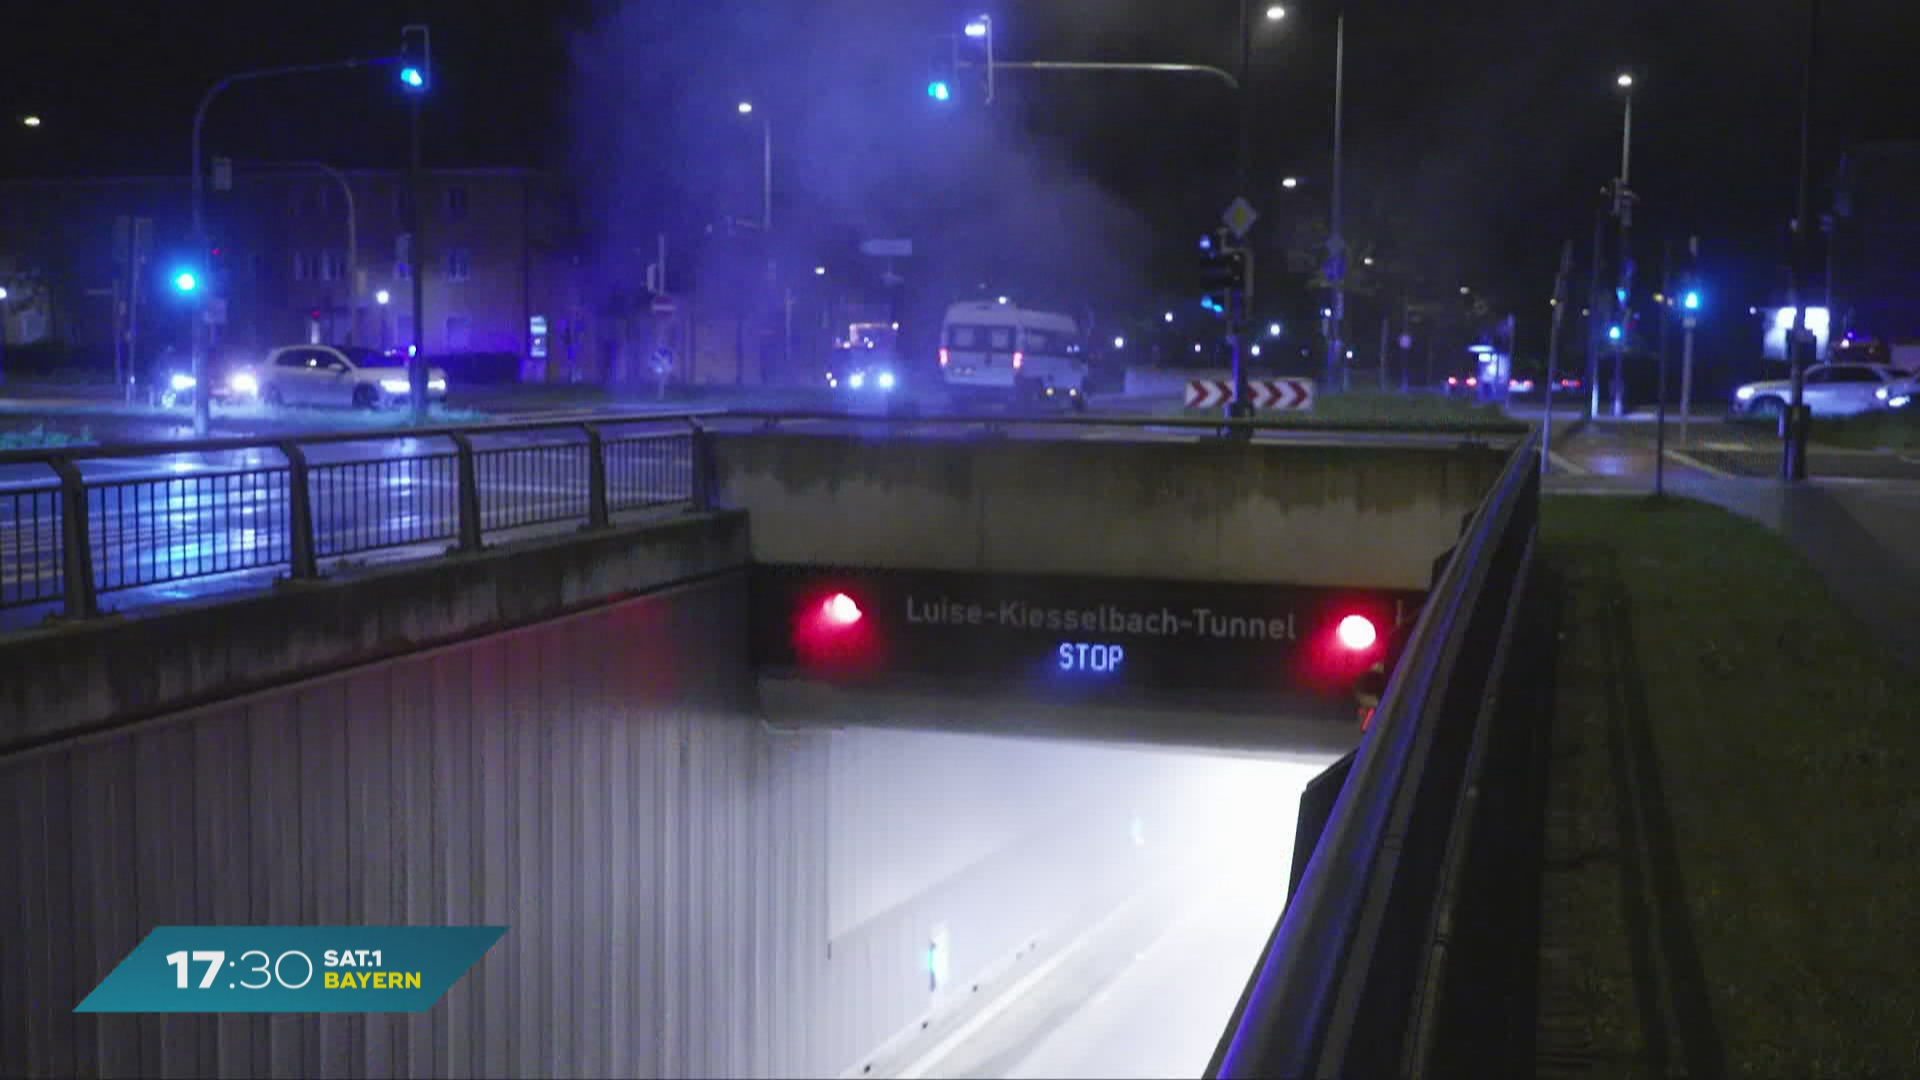 Brand im Luise-Kiesselbach-Tunnel: Münchner Ring vorerst gesperrt